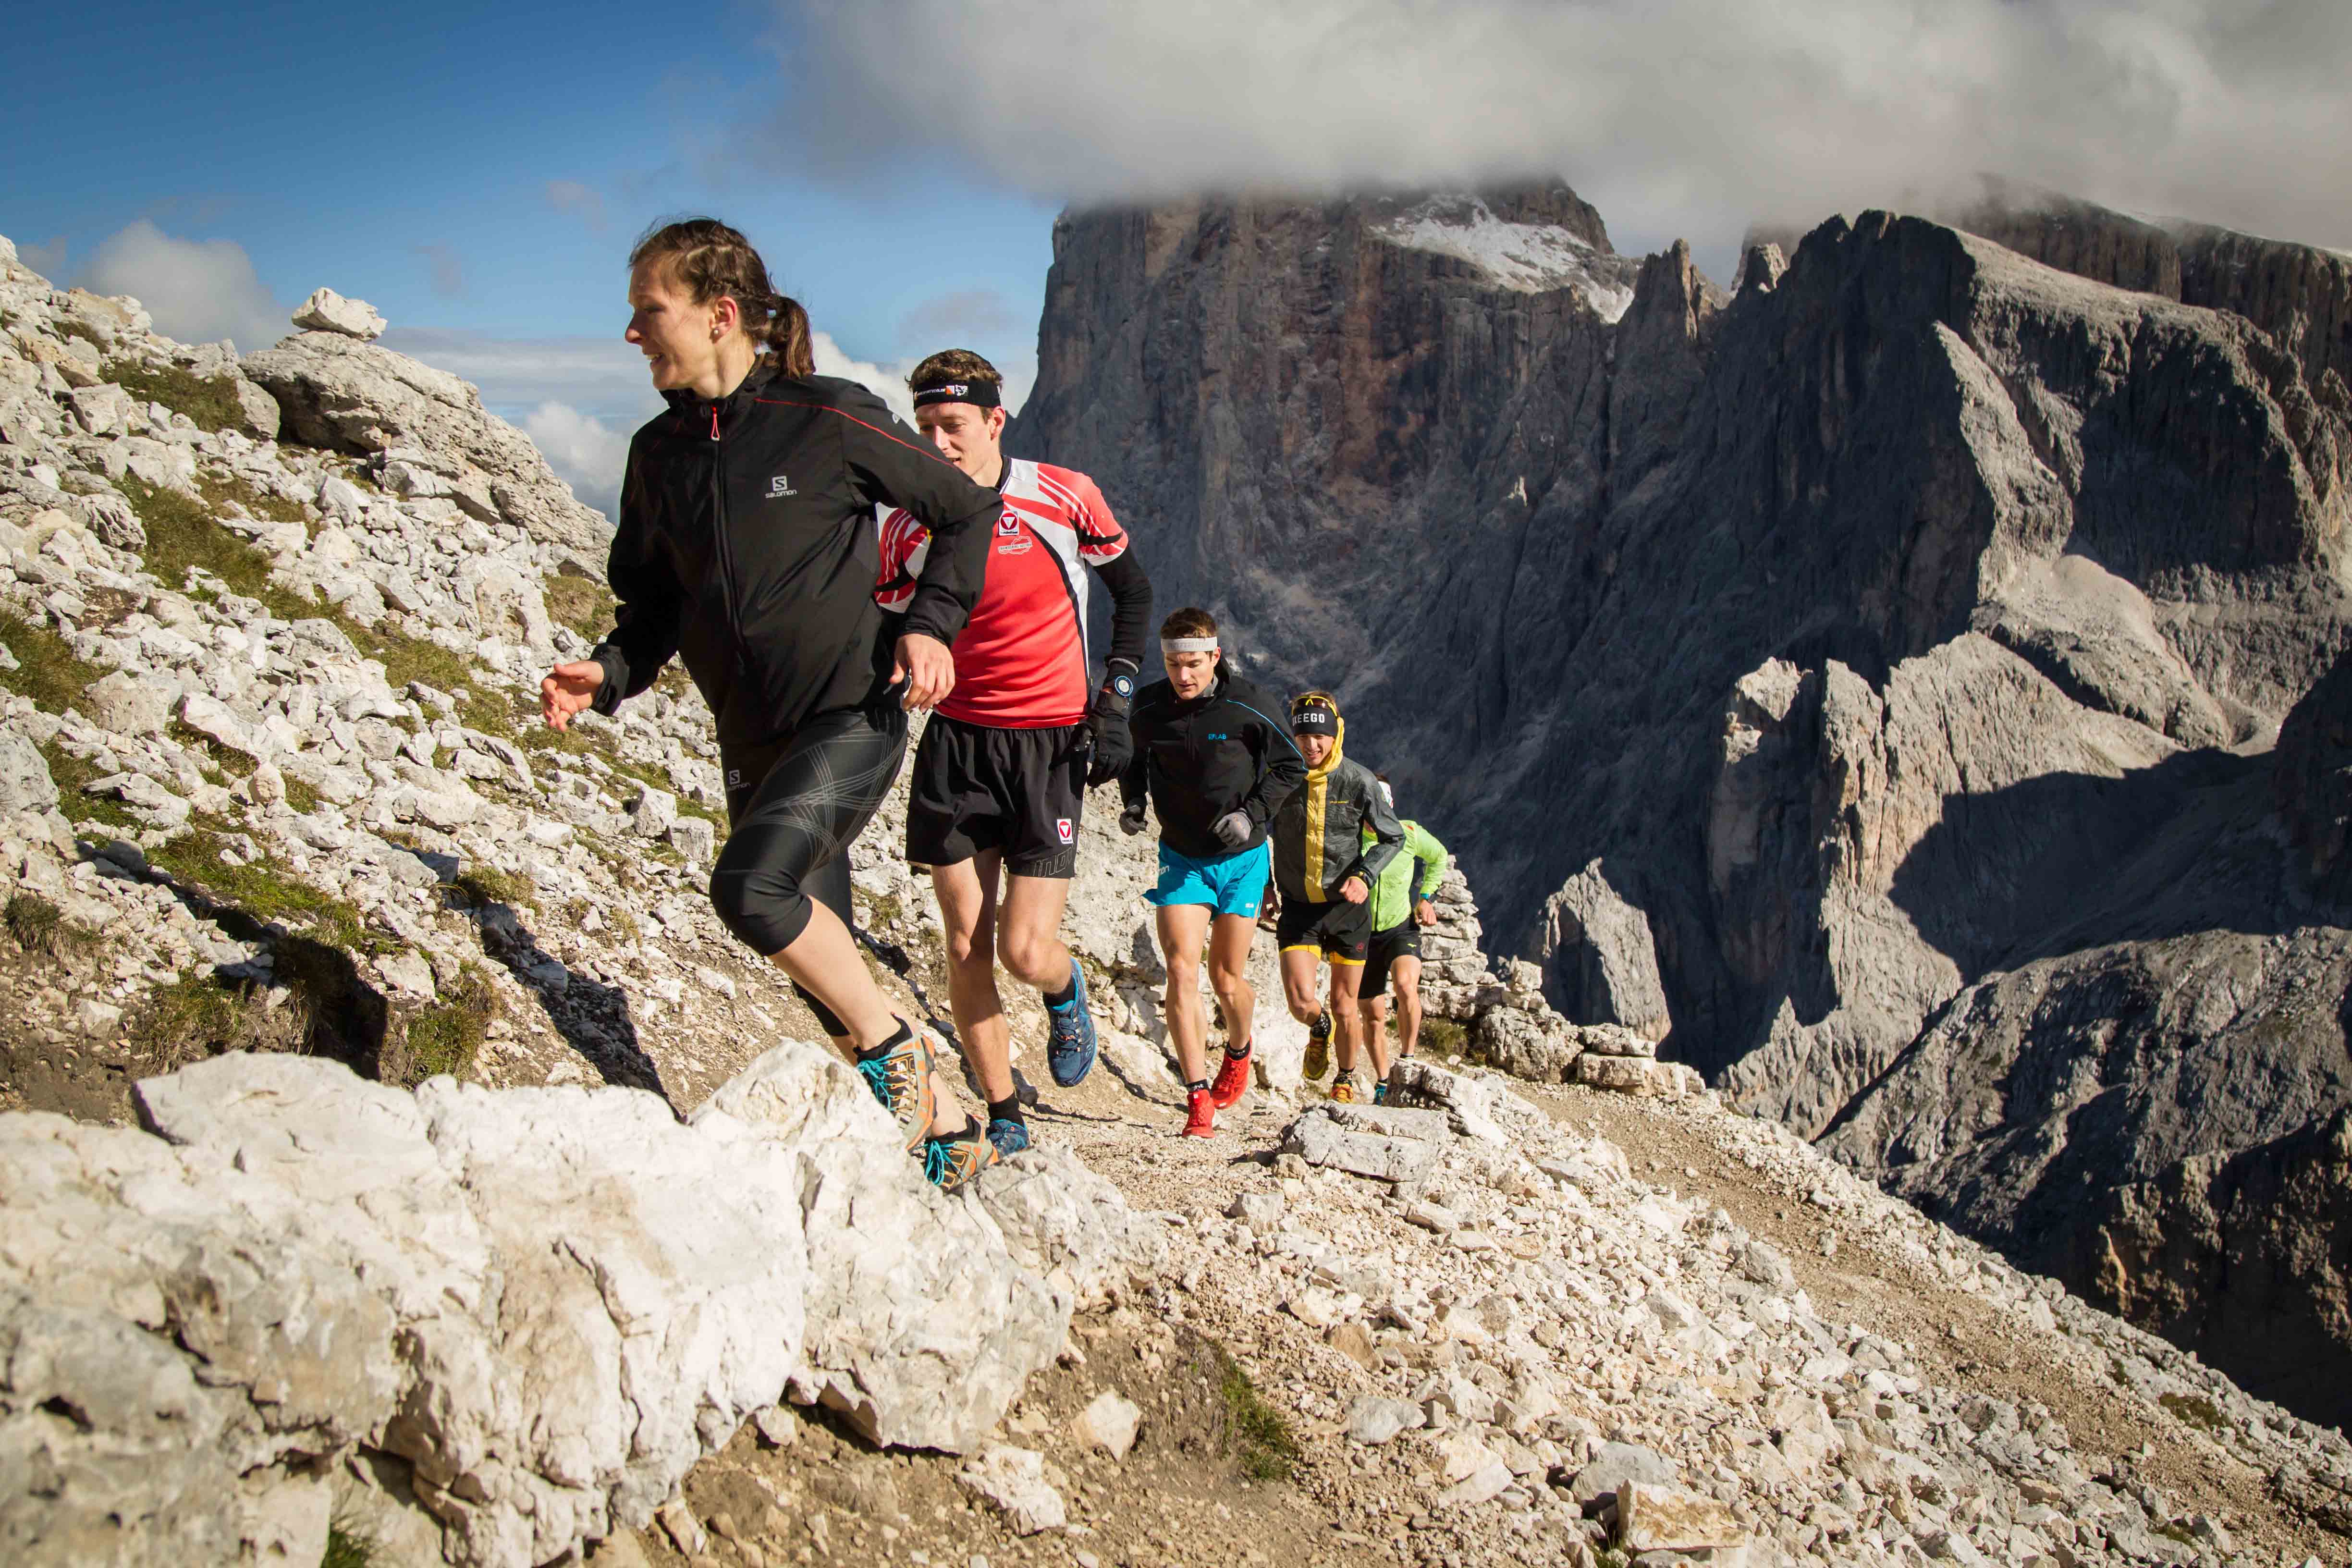 Corsa in montagna - Rosetta Verticale Trail Run